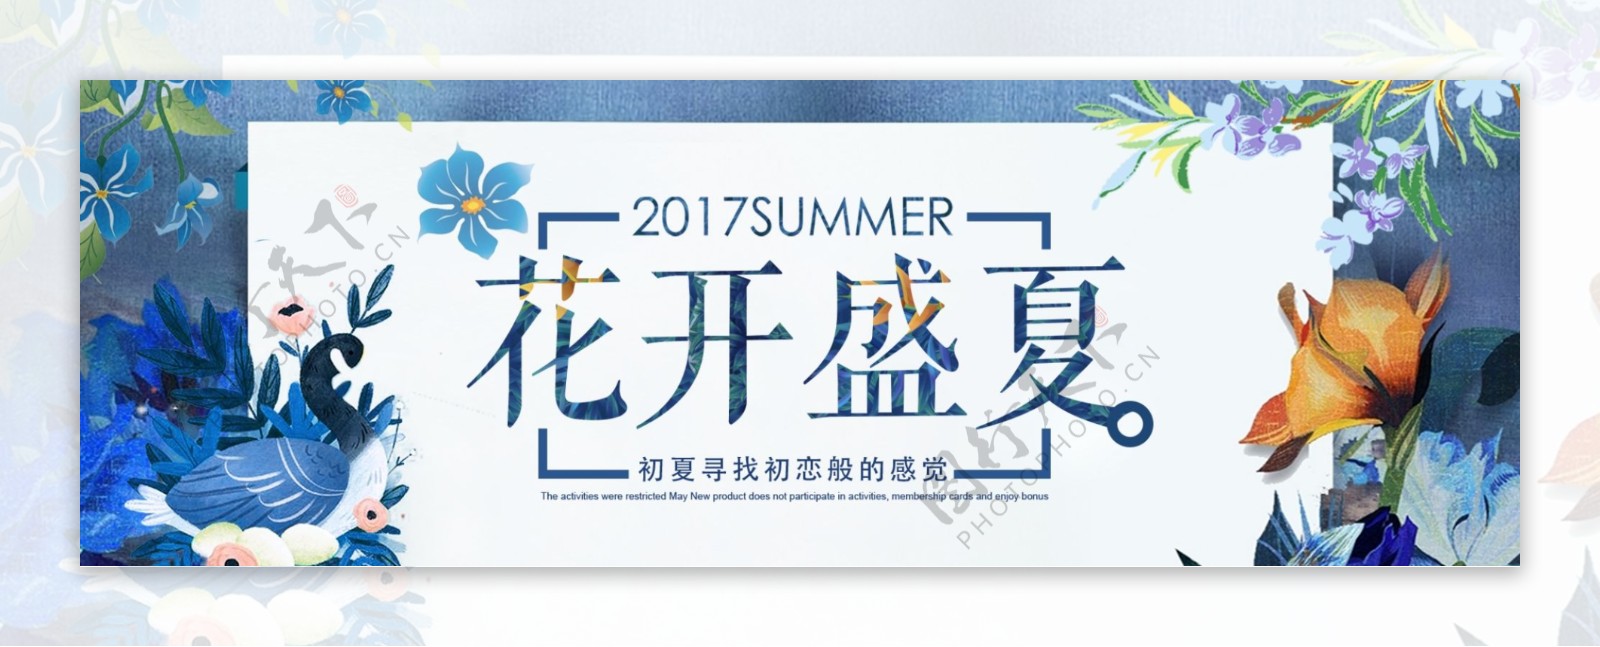 电商淘宝天猫夏季夏天夏日夏装促销海报